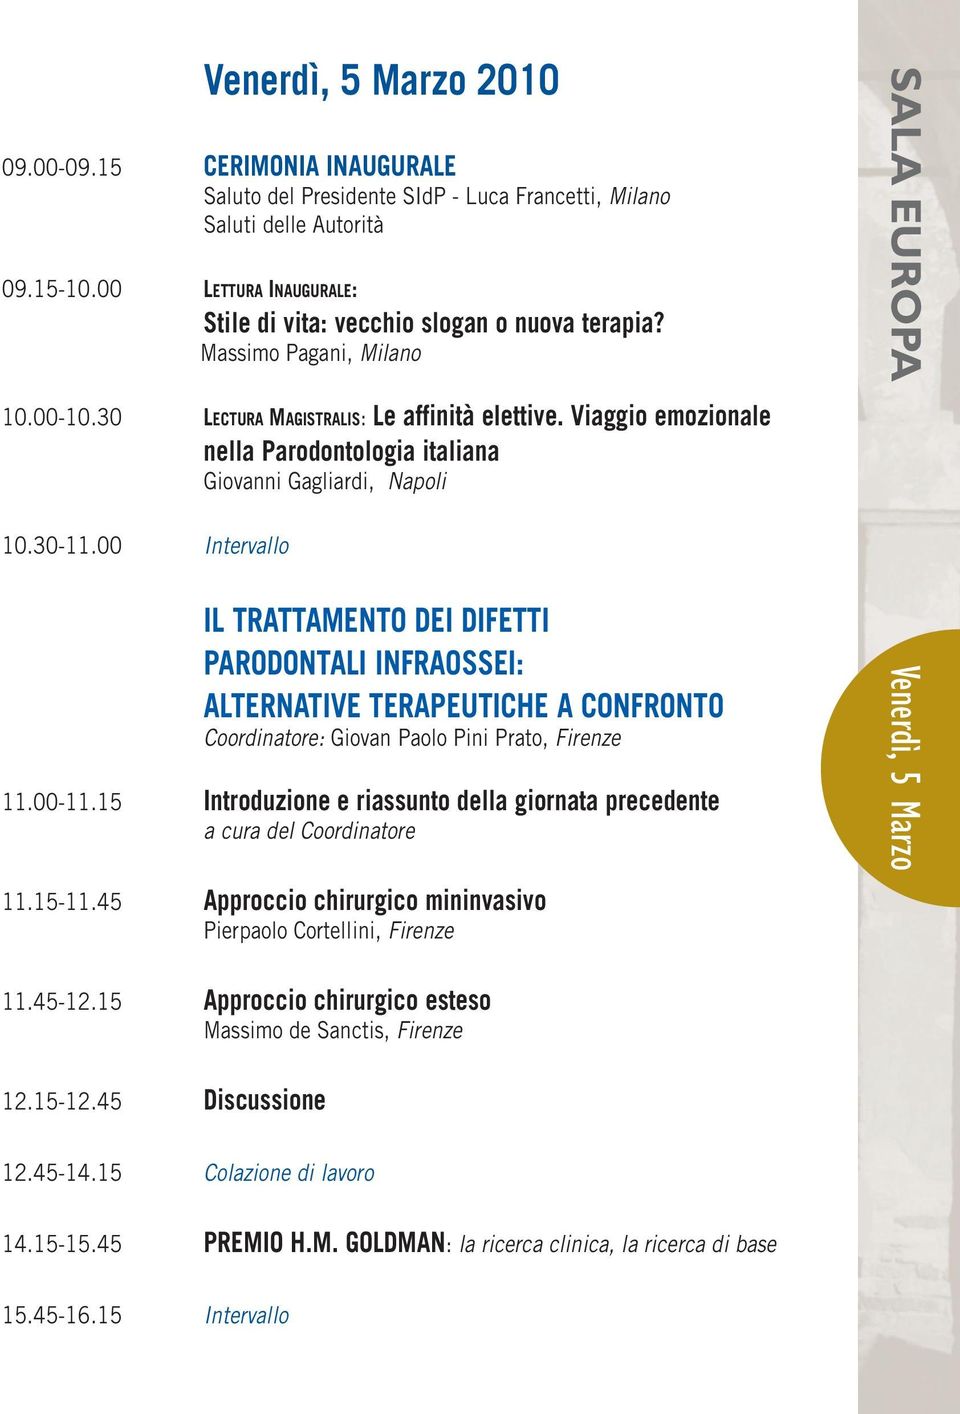 Viaggio emozionale nella Parodontologia italiana Giovanni Gagliardi, Napoli 10.30-11.